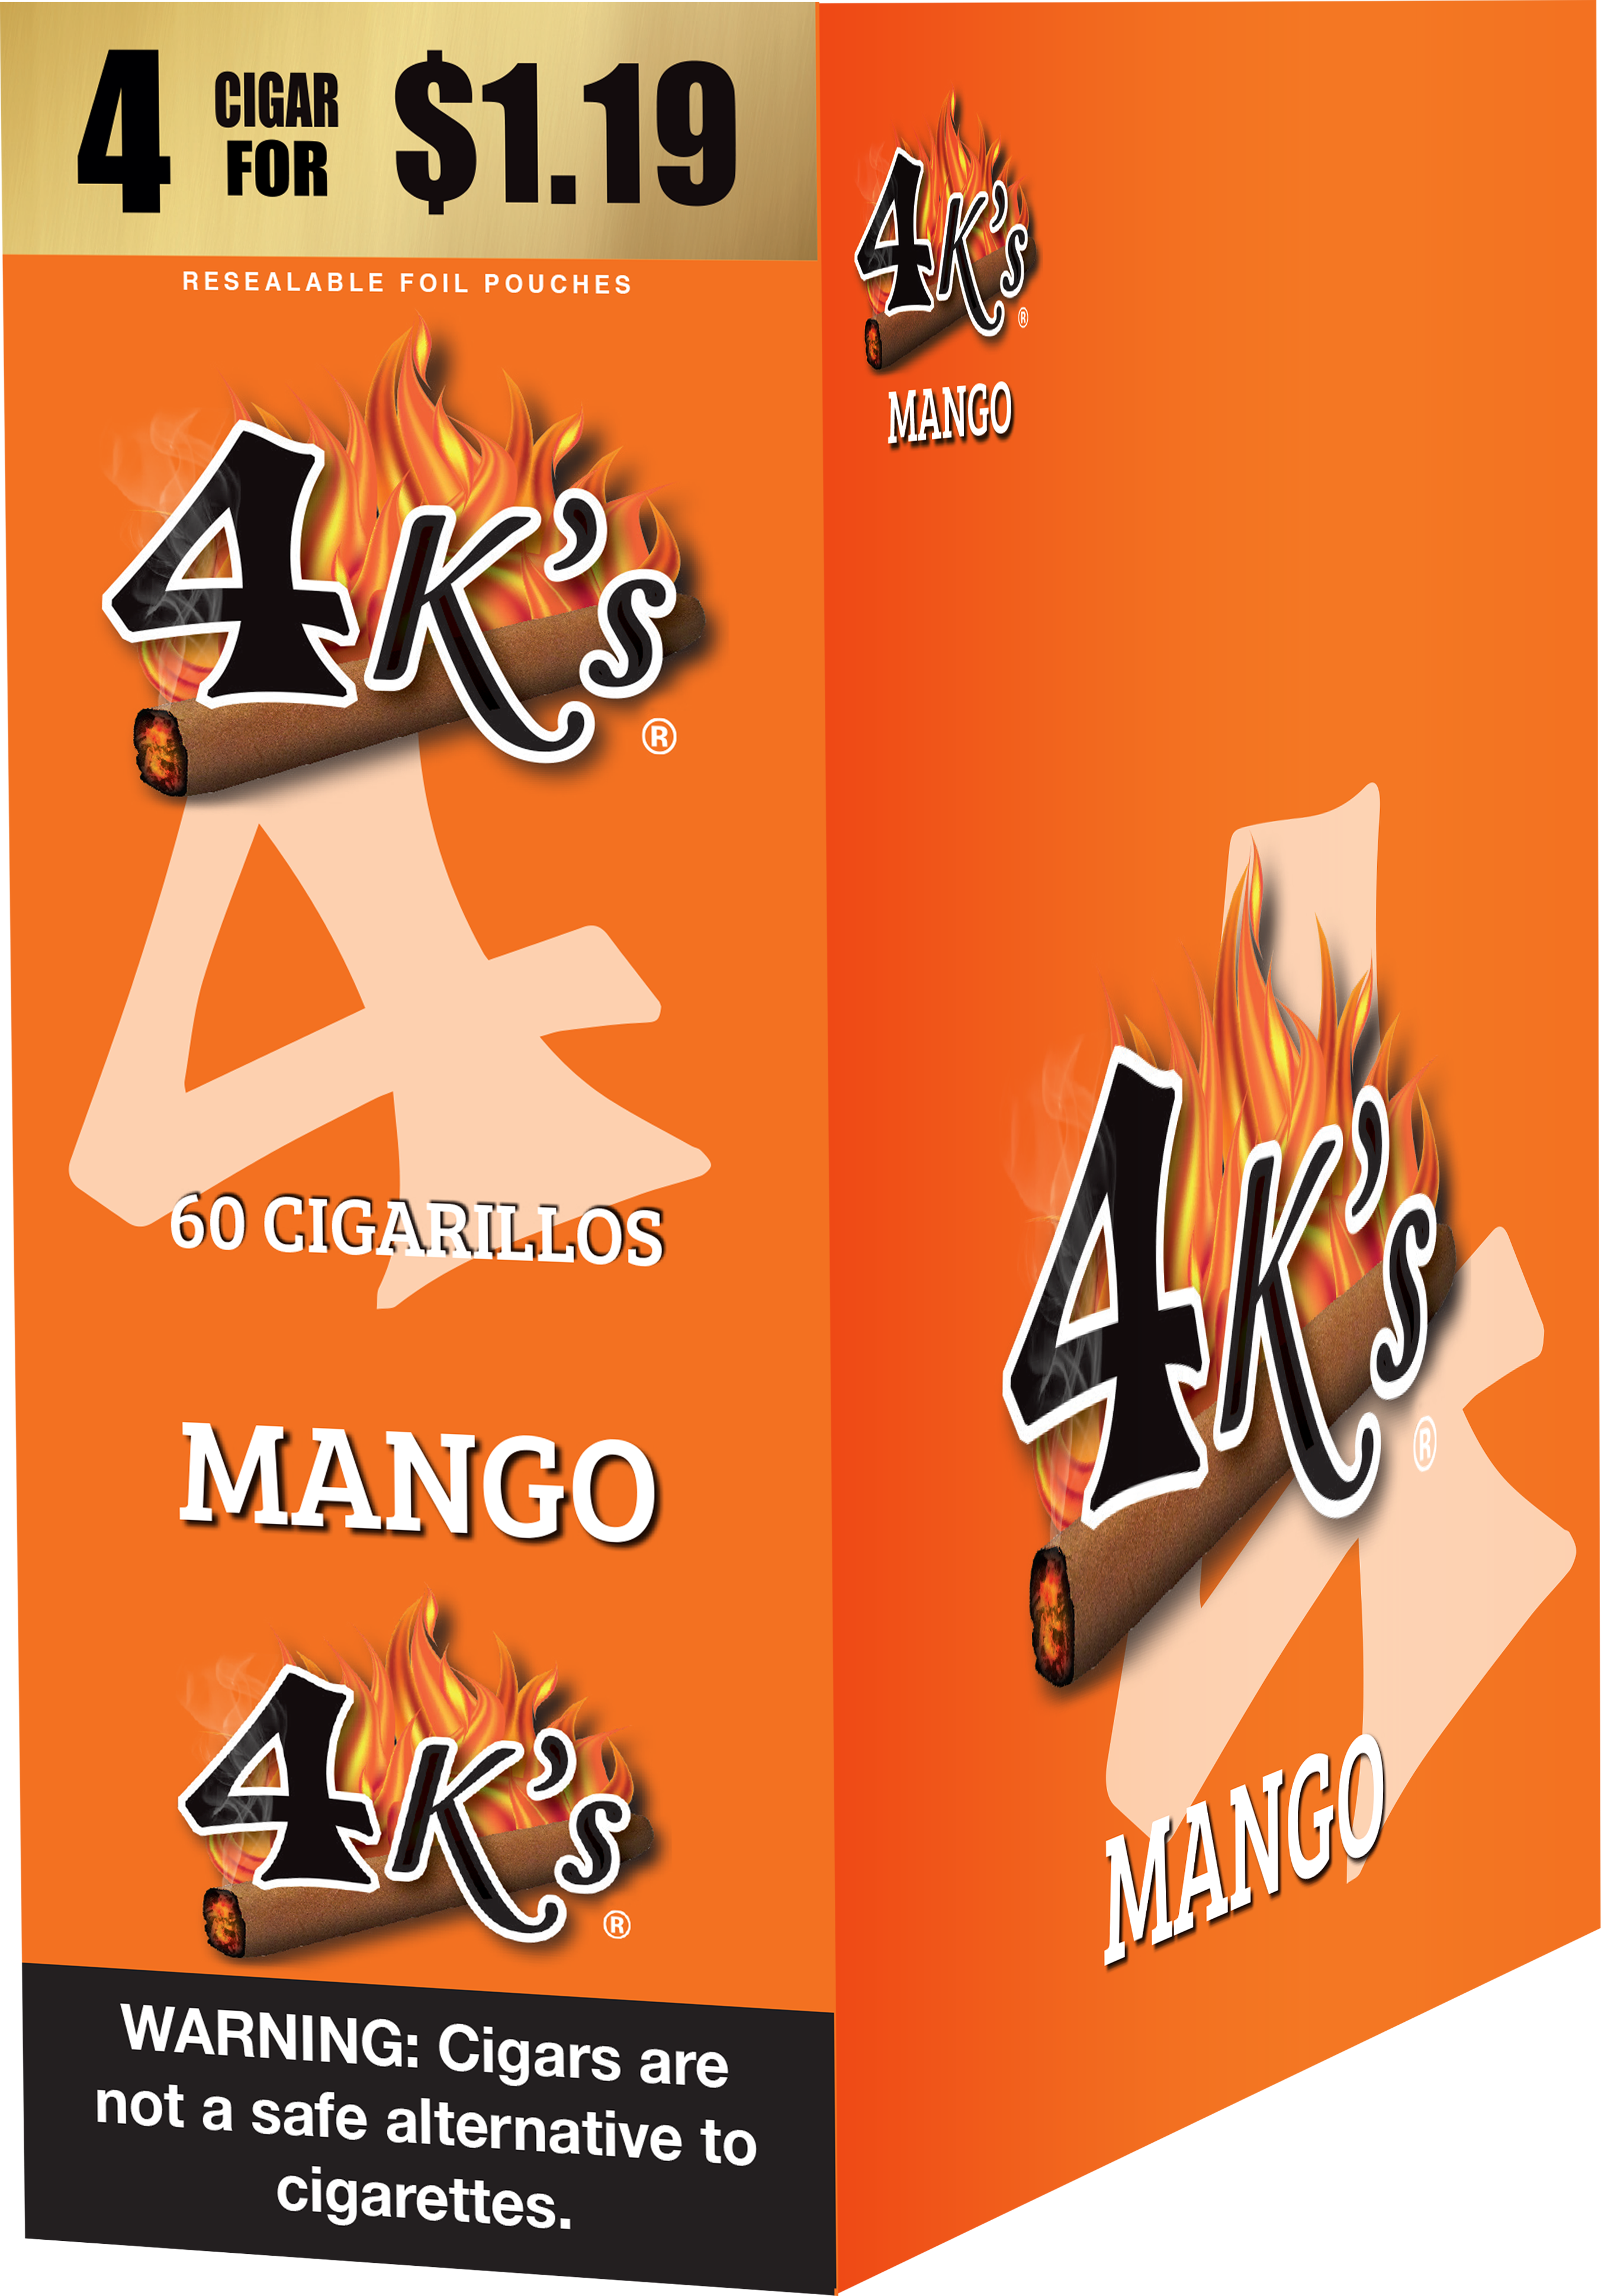 4kings mango 4/$1.19 f.p. 15/4pk